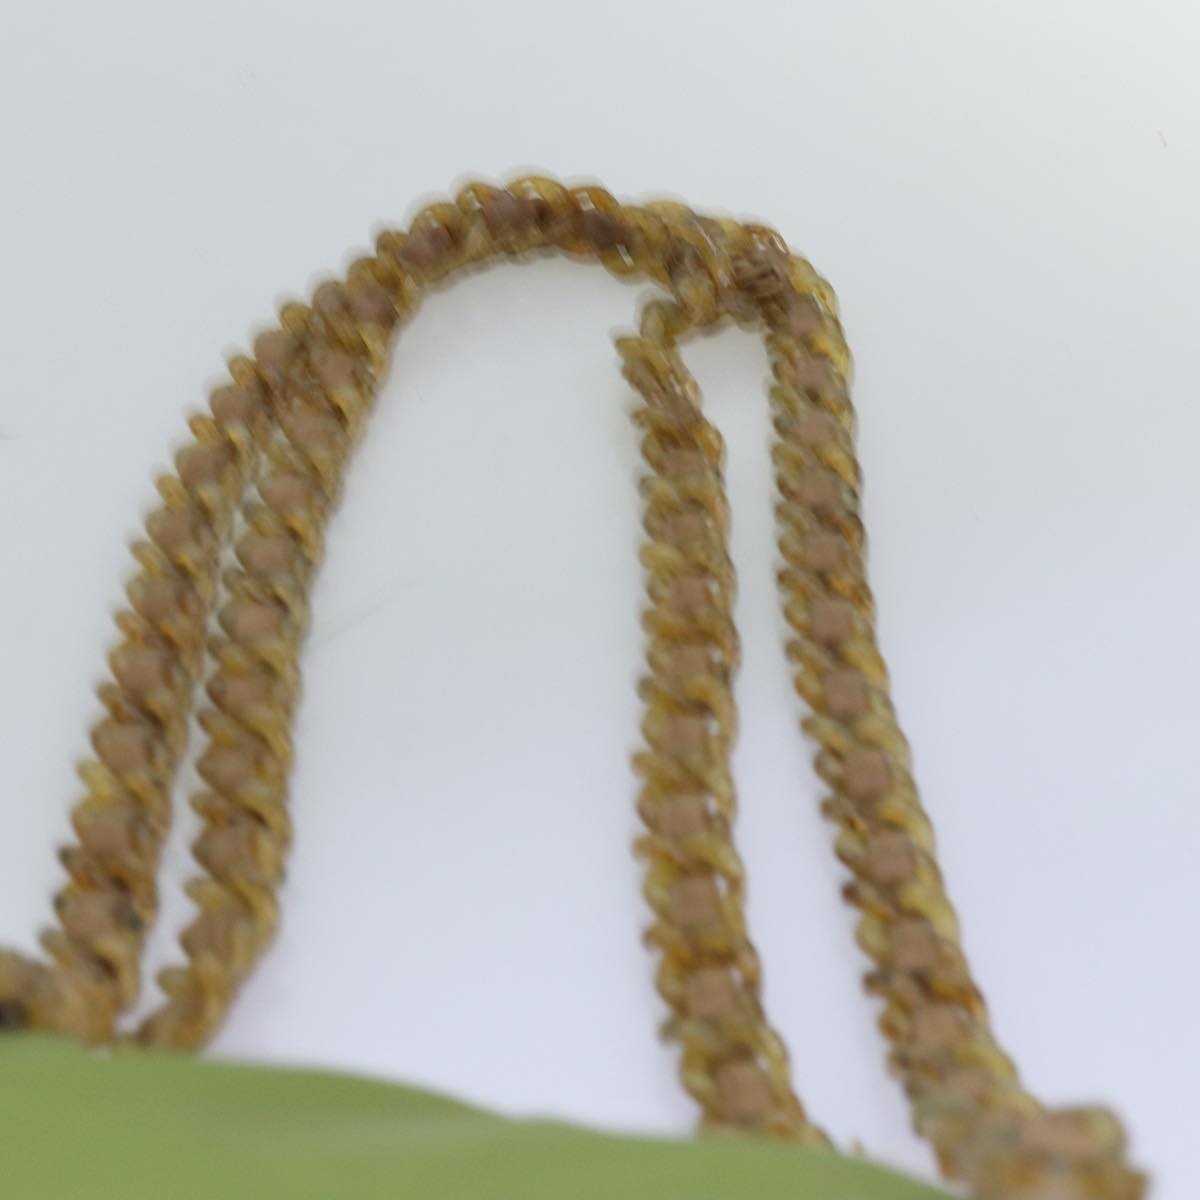 PRADA Chain Tote Bag Nylon Khaki Auth 74538